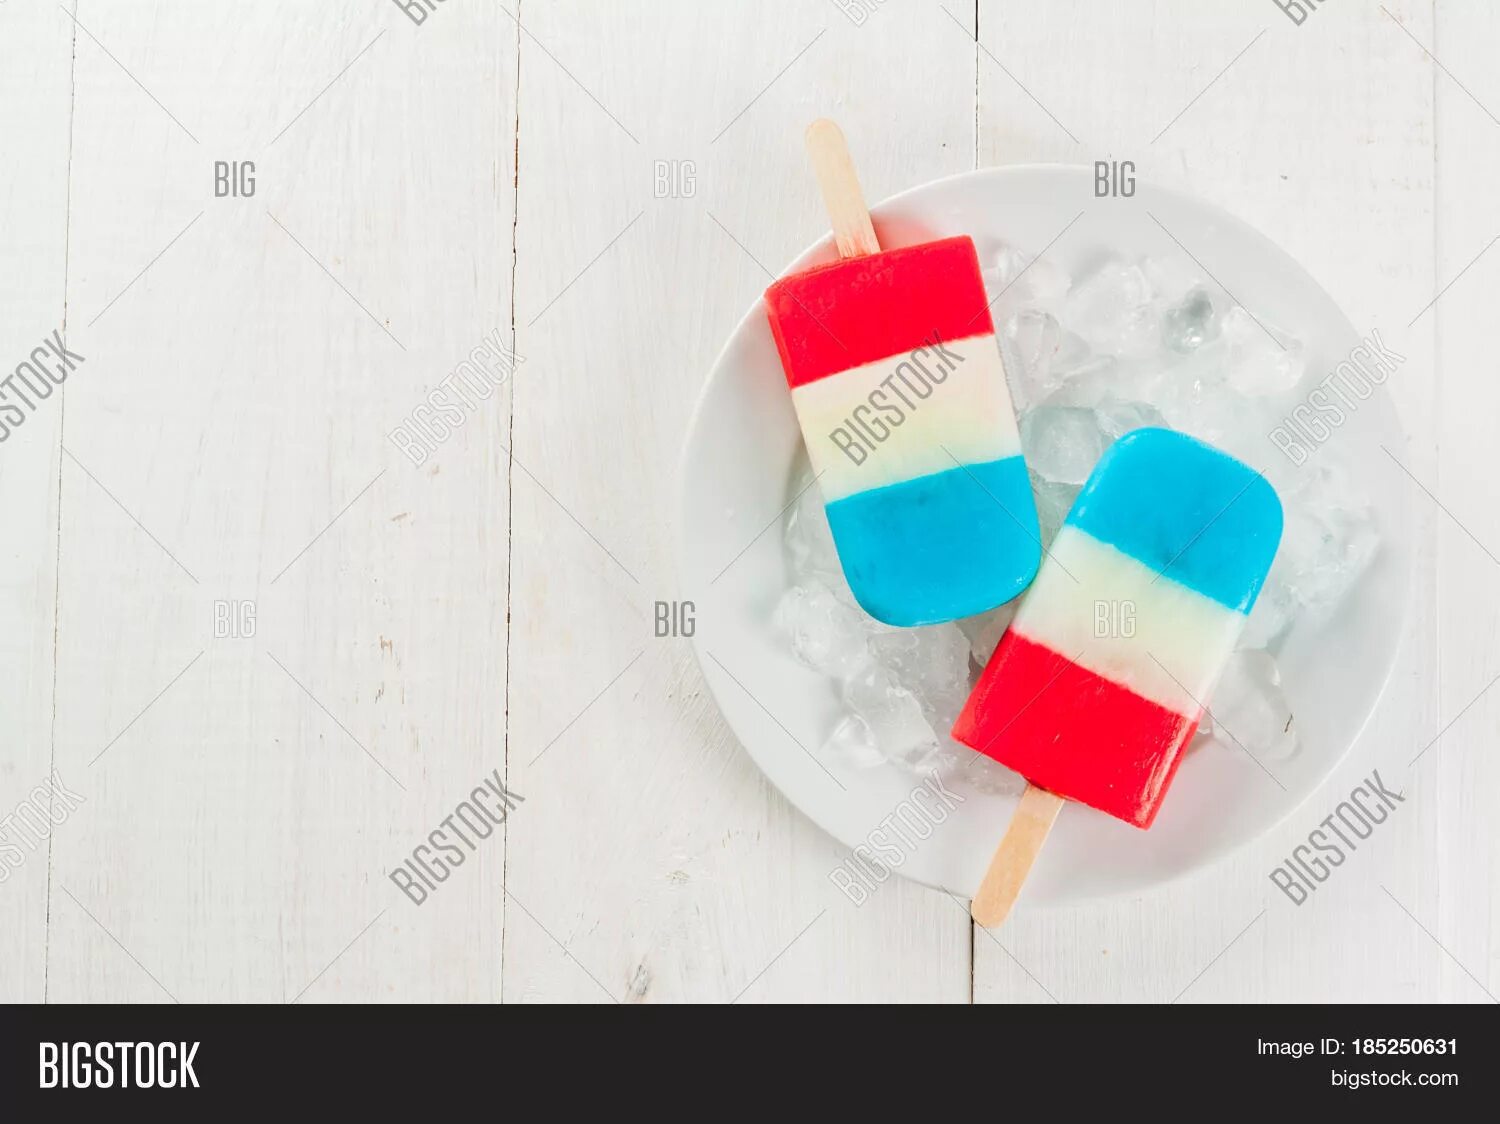 Мороженое в красном и белом. Мороженое бело сине красное. Красно голубое мороженое. Красно синий белый фруктовый лёд.